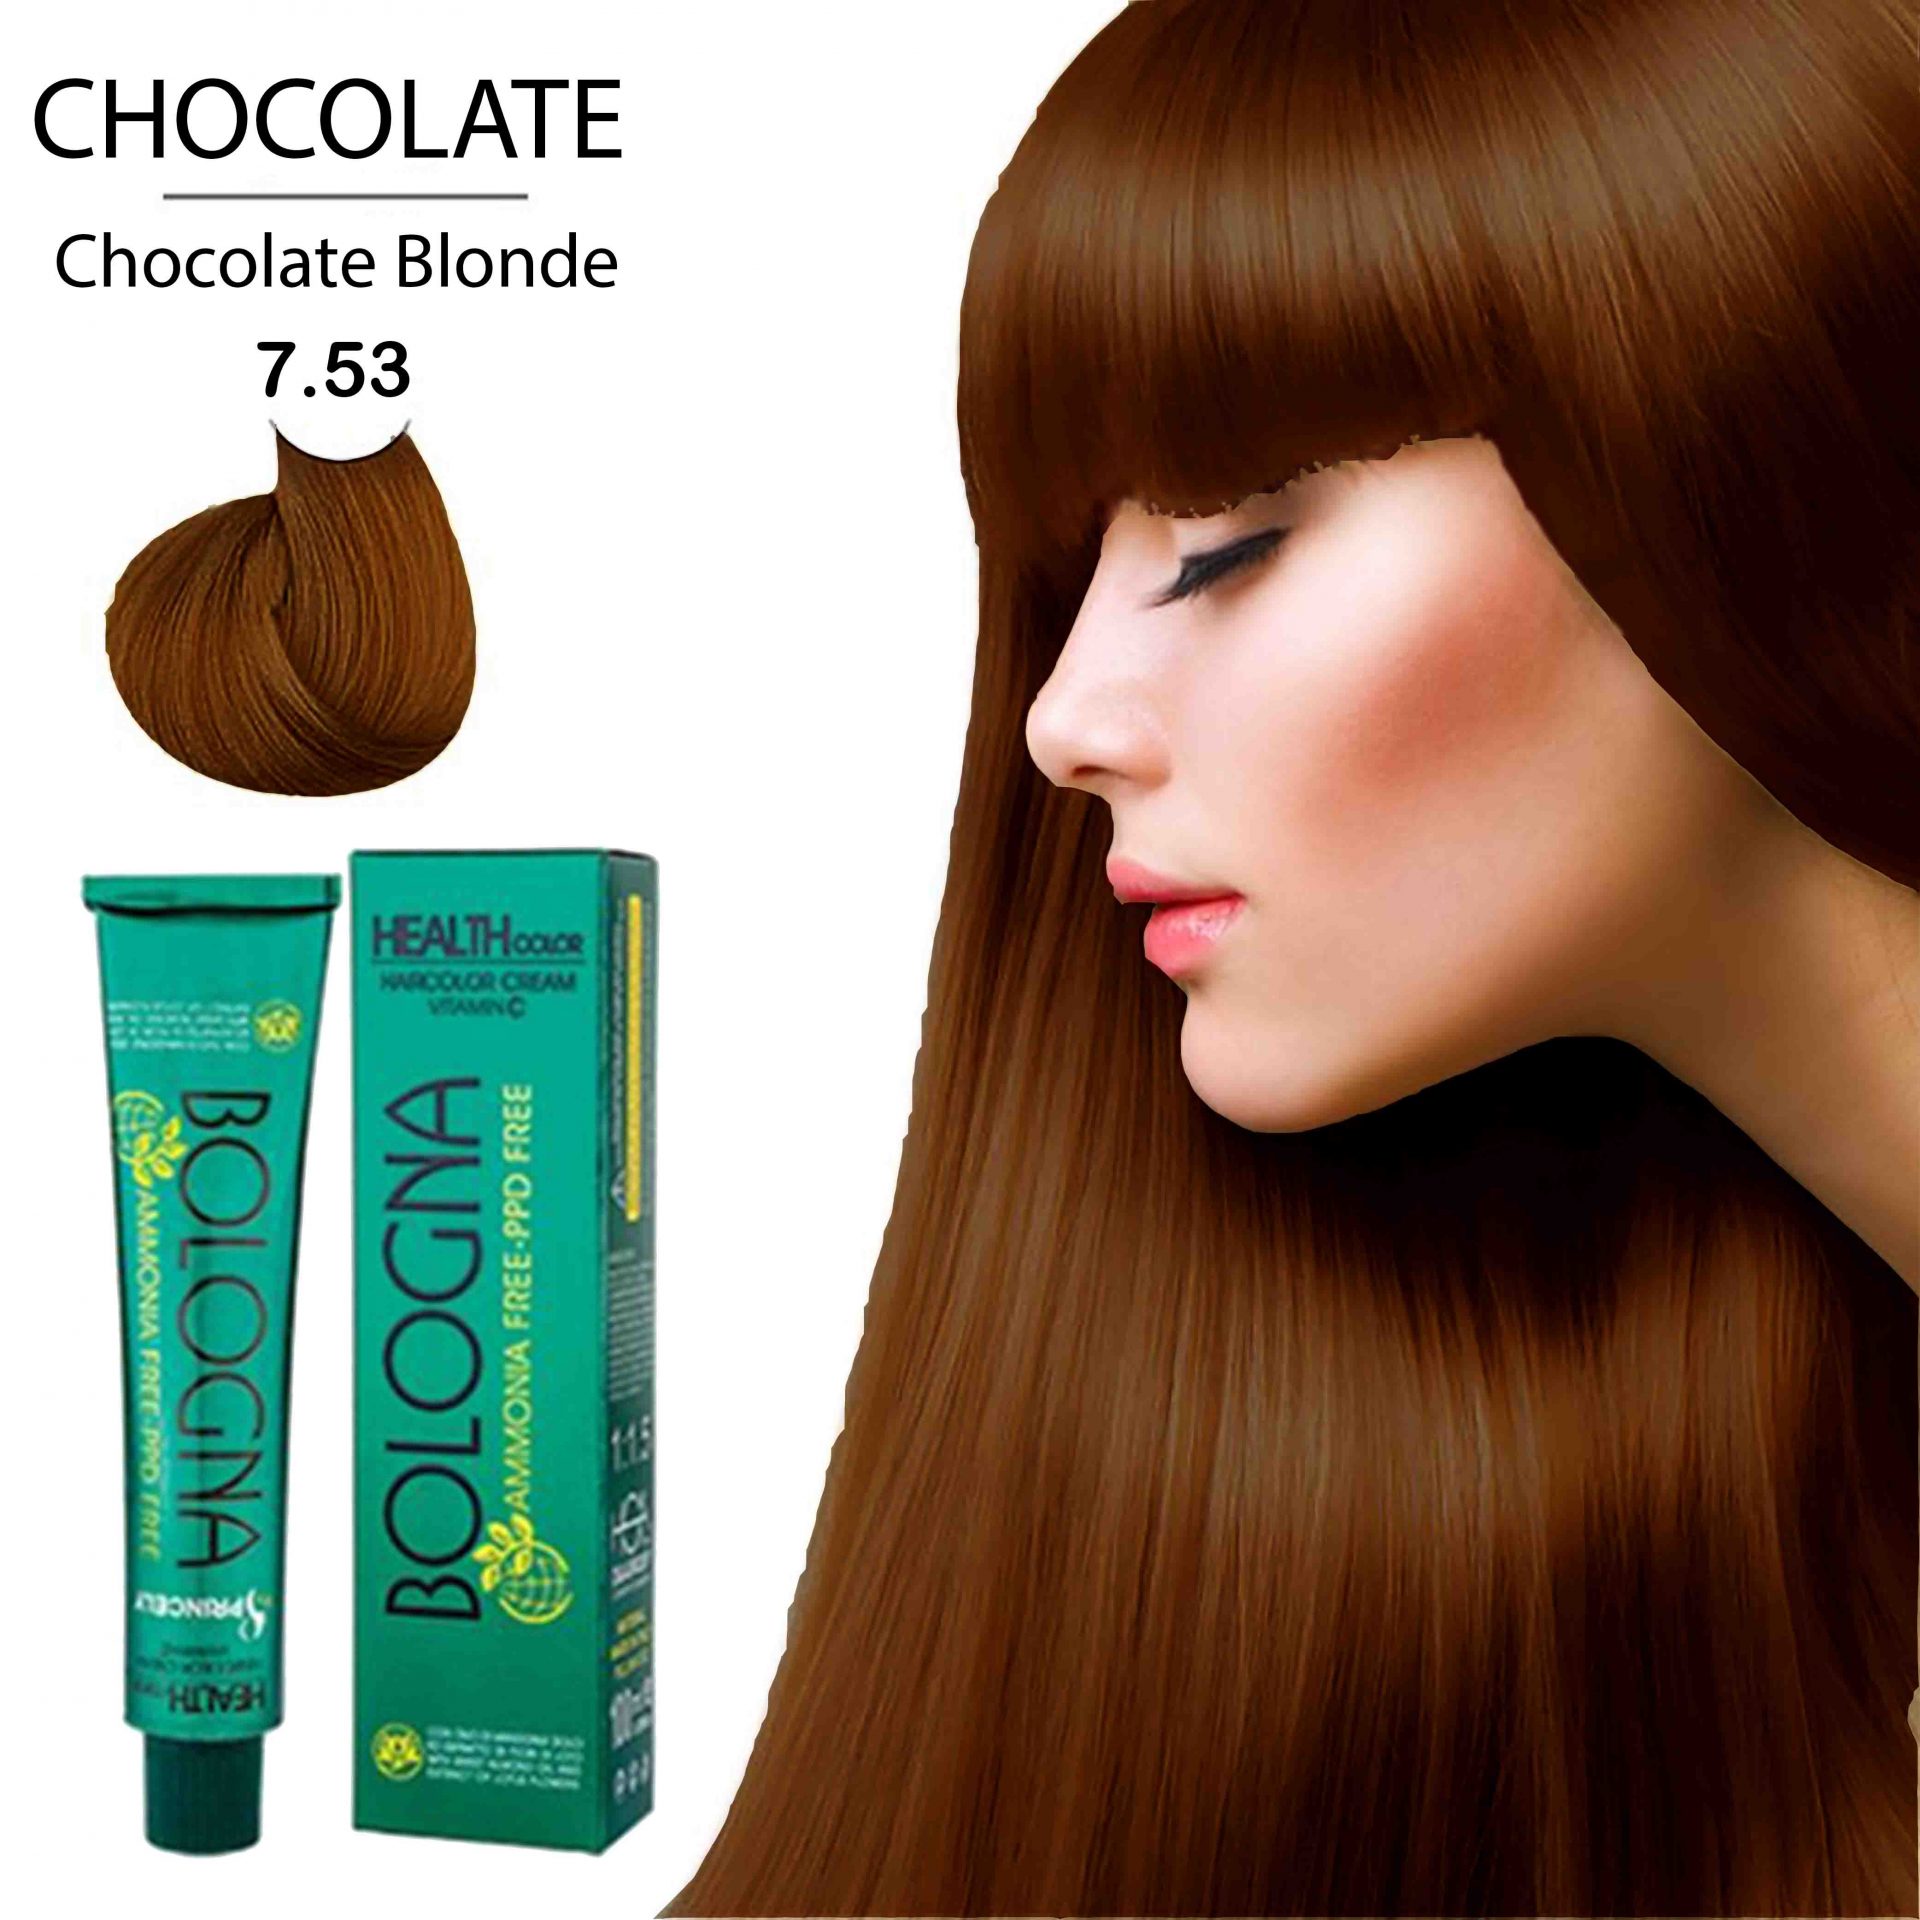 رنگ مو بدون آمونیاک بلونیا شماره 7.53 بلوند شکلاتی حجم 100 میل_فروشگاه اینترنتی آرایشی بهداشتی آزارو در شیراز